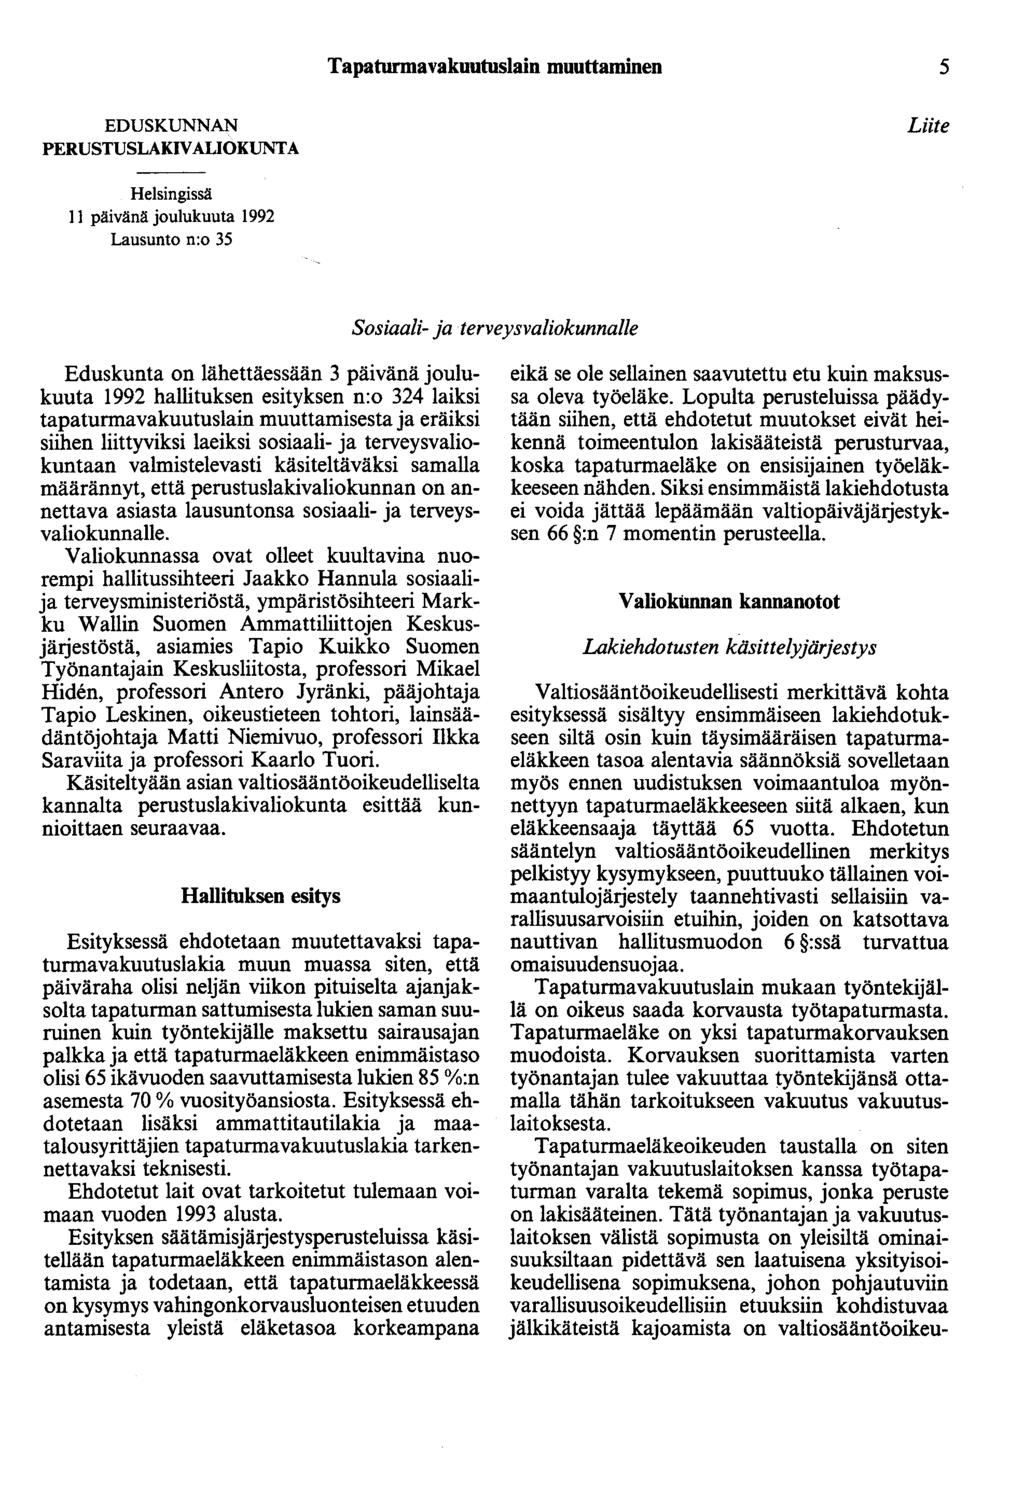 Tapaturmavakuutuslain muuttaminen 5 EDUSKUNNAN PERUSTUSLAKIVAUOKUNTA Liite Helsingissä II päivänä joulukuuta 1992 Lausunto n:o 35 Sosiaali- ja terveysvaliokunnalle Eduskunta on lähettäessään 3